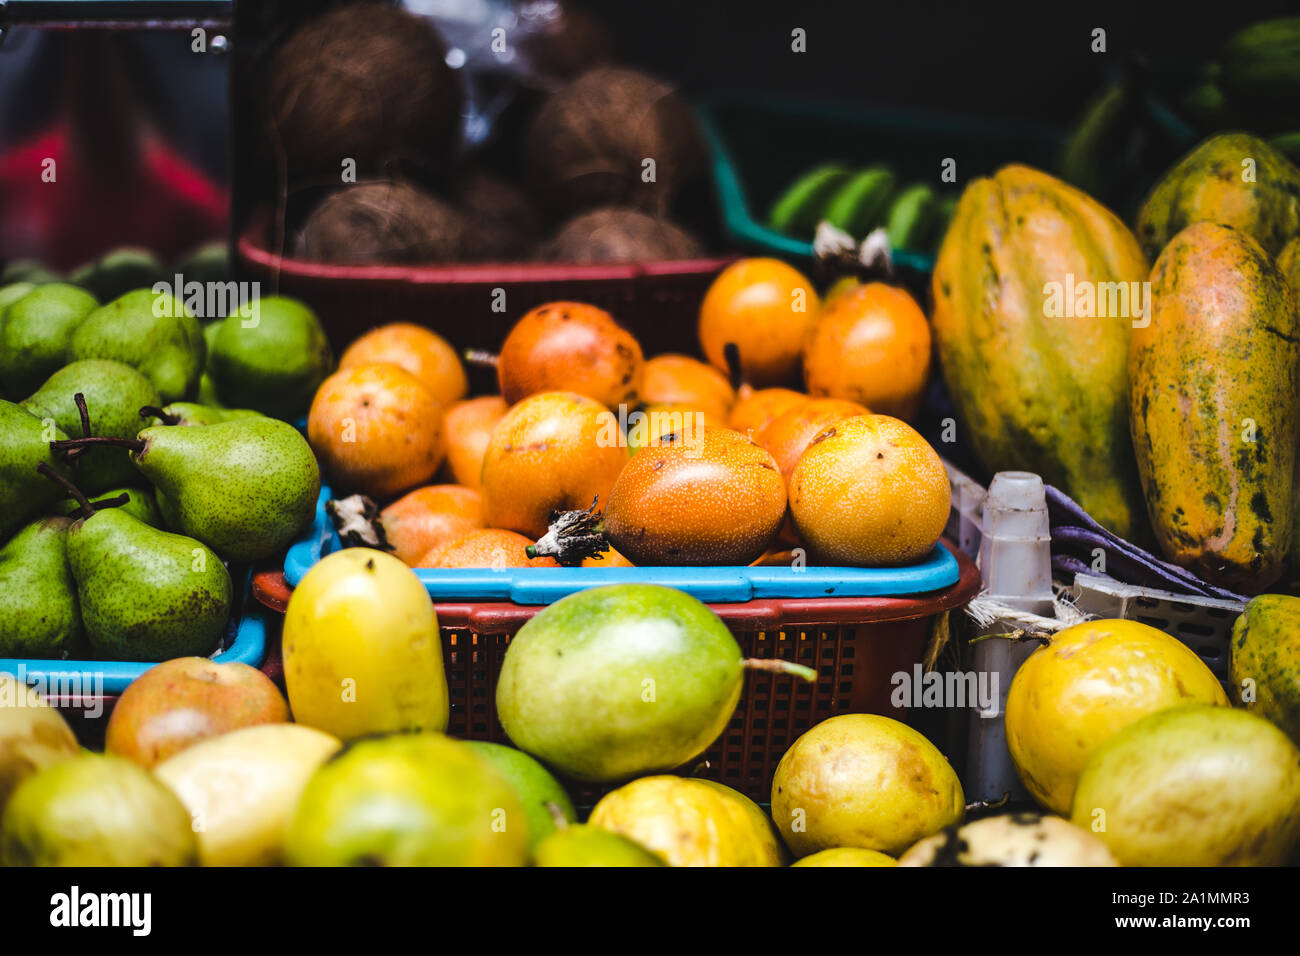 Körbe von exotischen kolumbianischen Früchte zum Verkauf an ein Lebensmittel Marktstand | Juicy granadilla Passionsfrucht, curuba, Guanabana, Kokosnüsse, Birnen und lulo Stockfoto